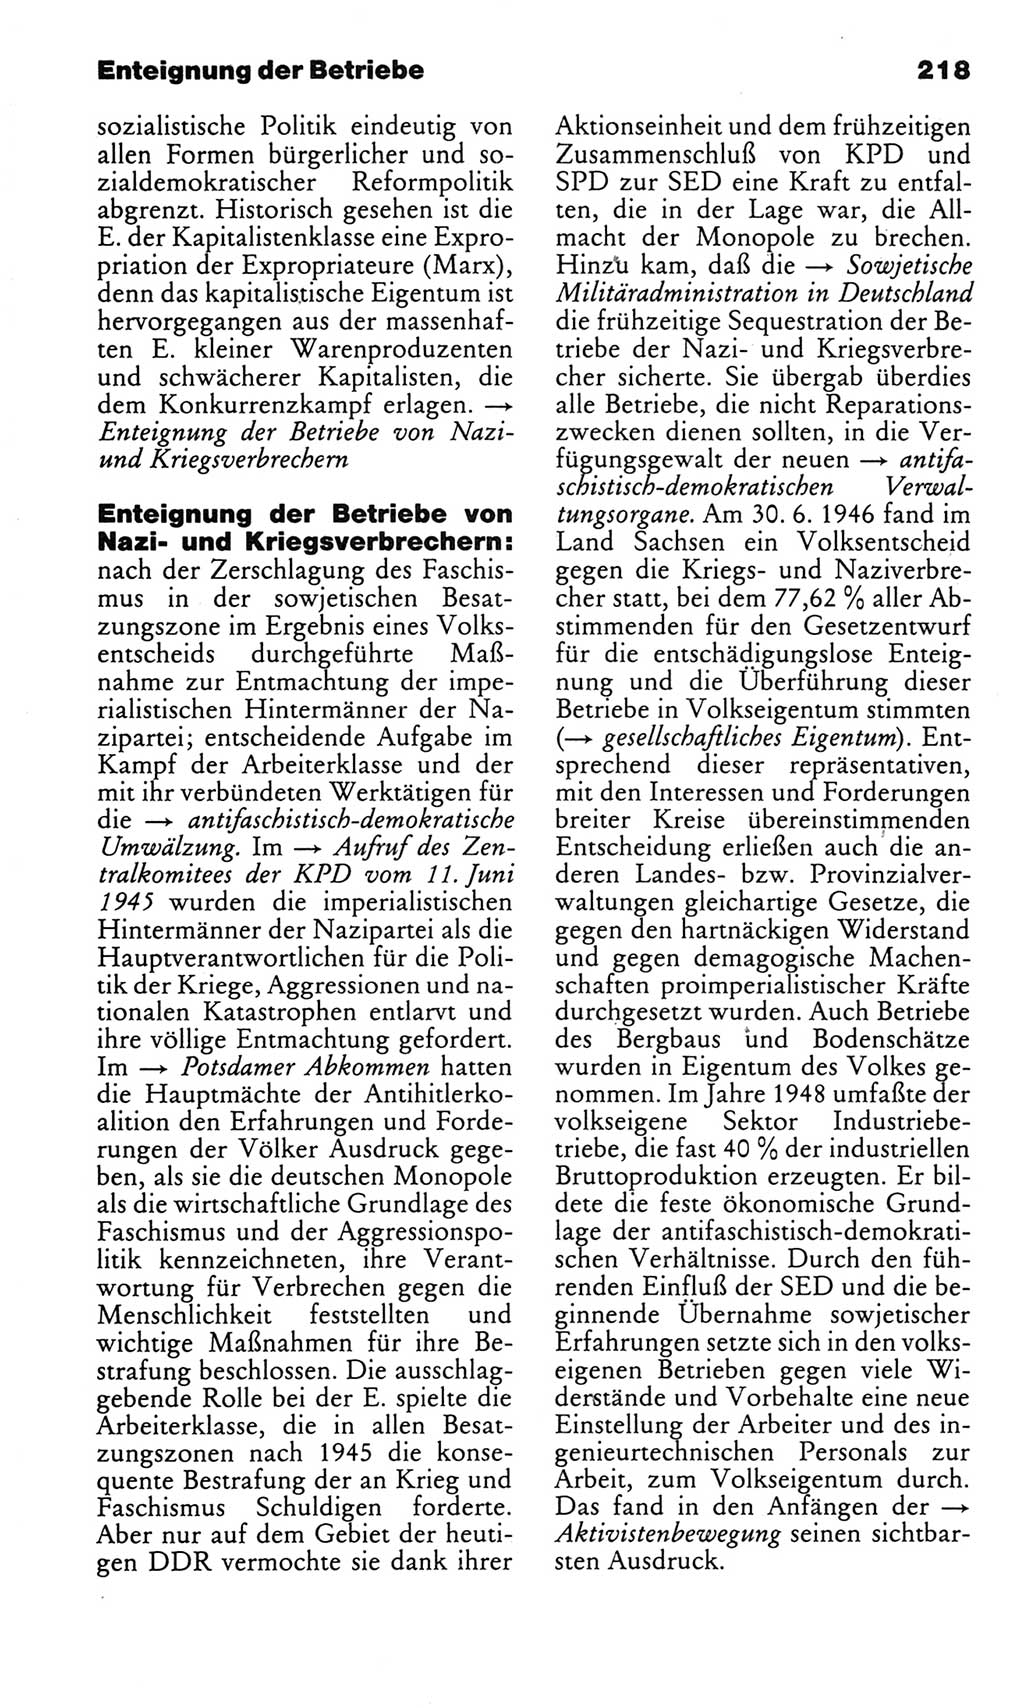 Kleines politisches Wörterbuch [Deutsche Demokratische Republik (DDR)] 1983, Seite 218 (Kl. pol. Wb. DDR 1983, S. 218)